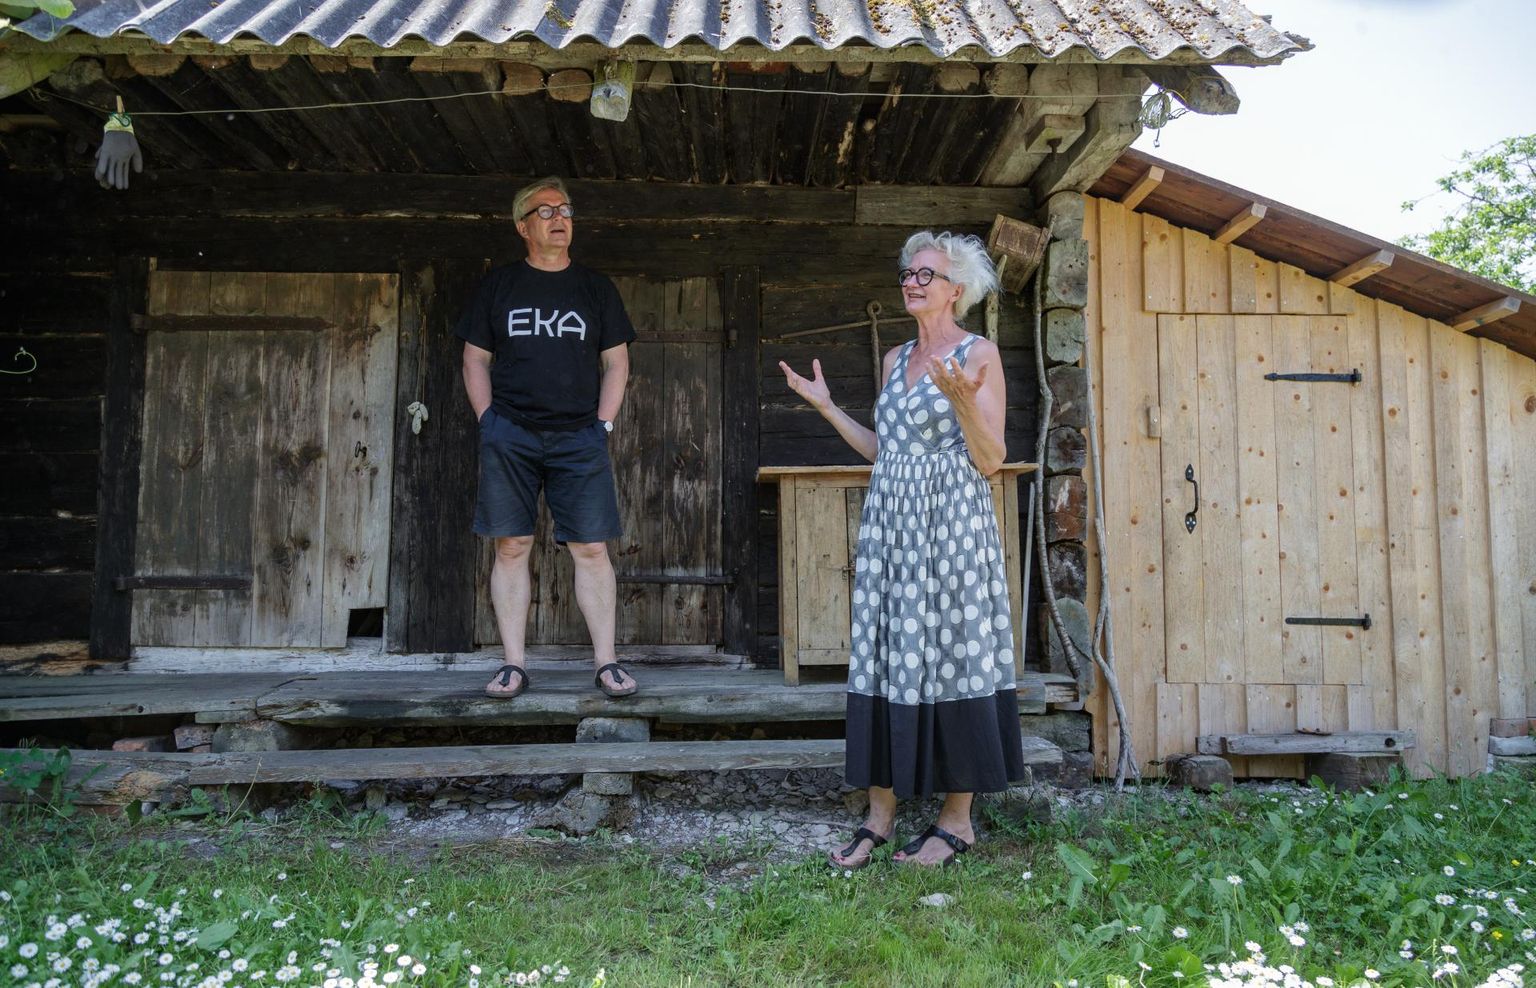 Eesti Kunstiakadeemia rektor Mart Kalm ja kunstnik Anu Kalm oma vana aida ees.